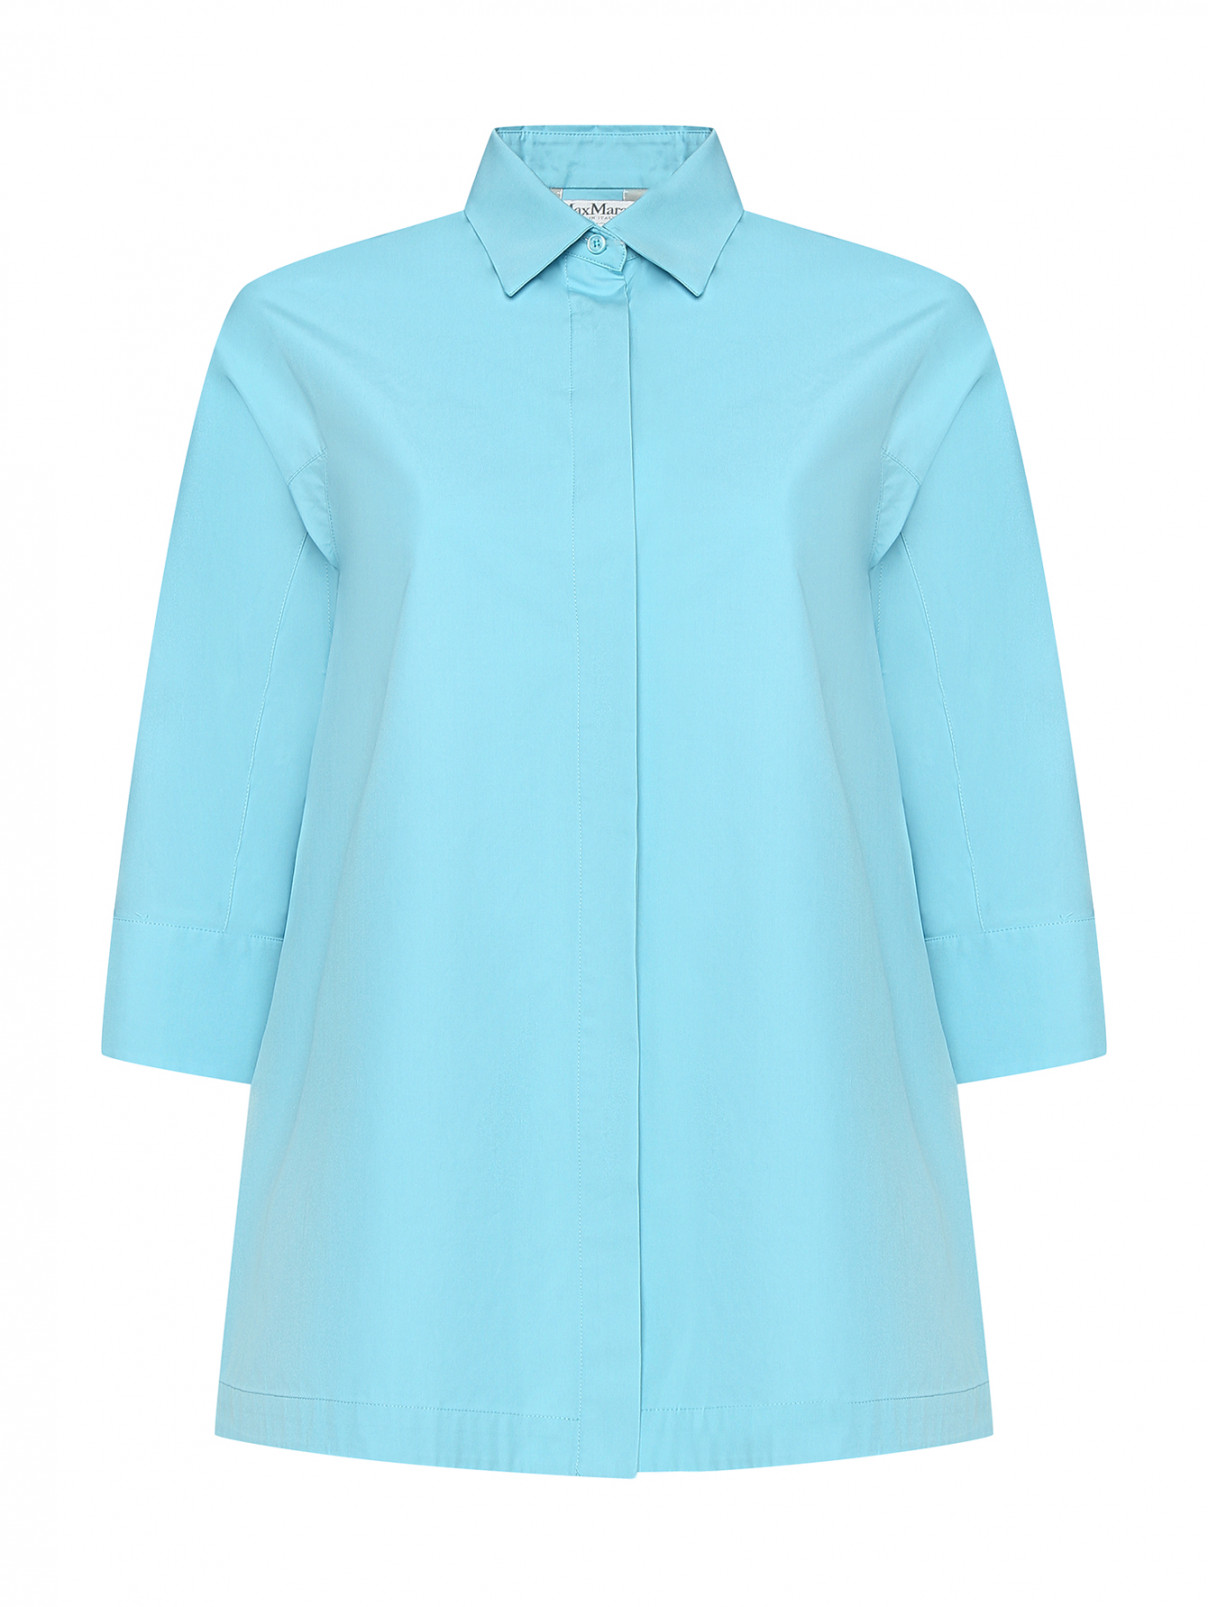 Рубашка из хлопка с рукавами 3/4 Max Mara  –  Общий вид  – Цвет:  Синий